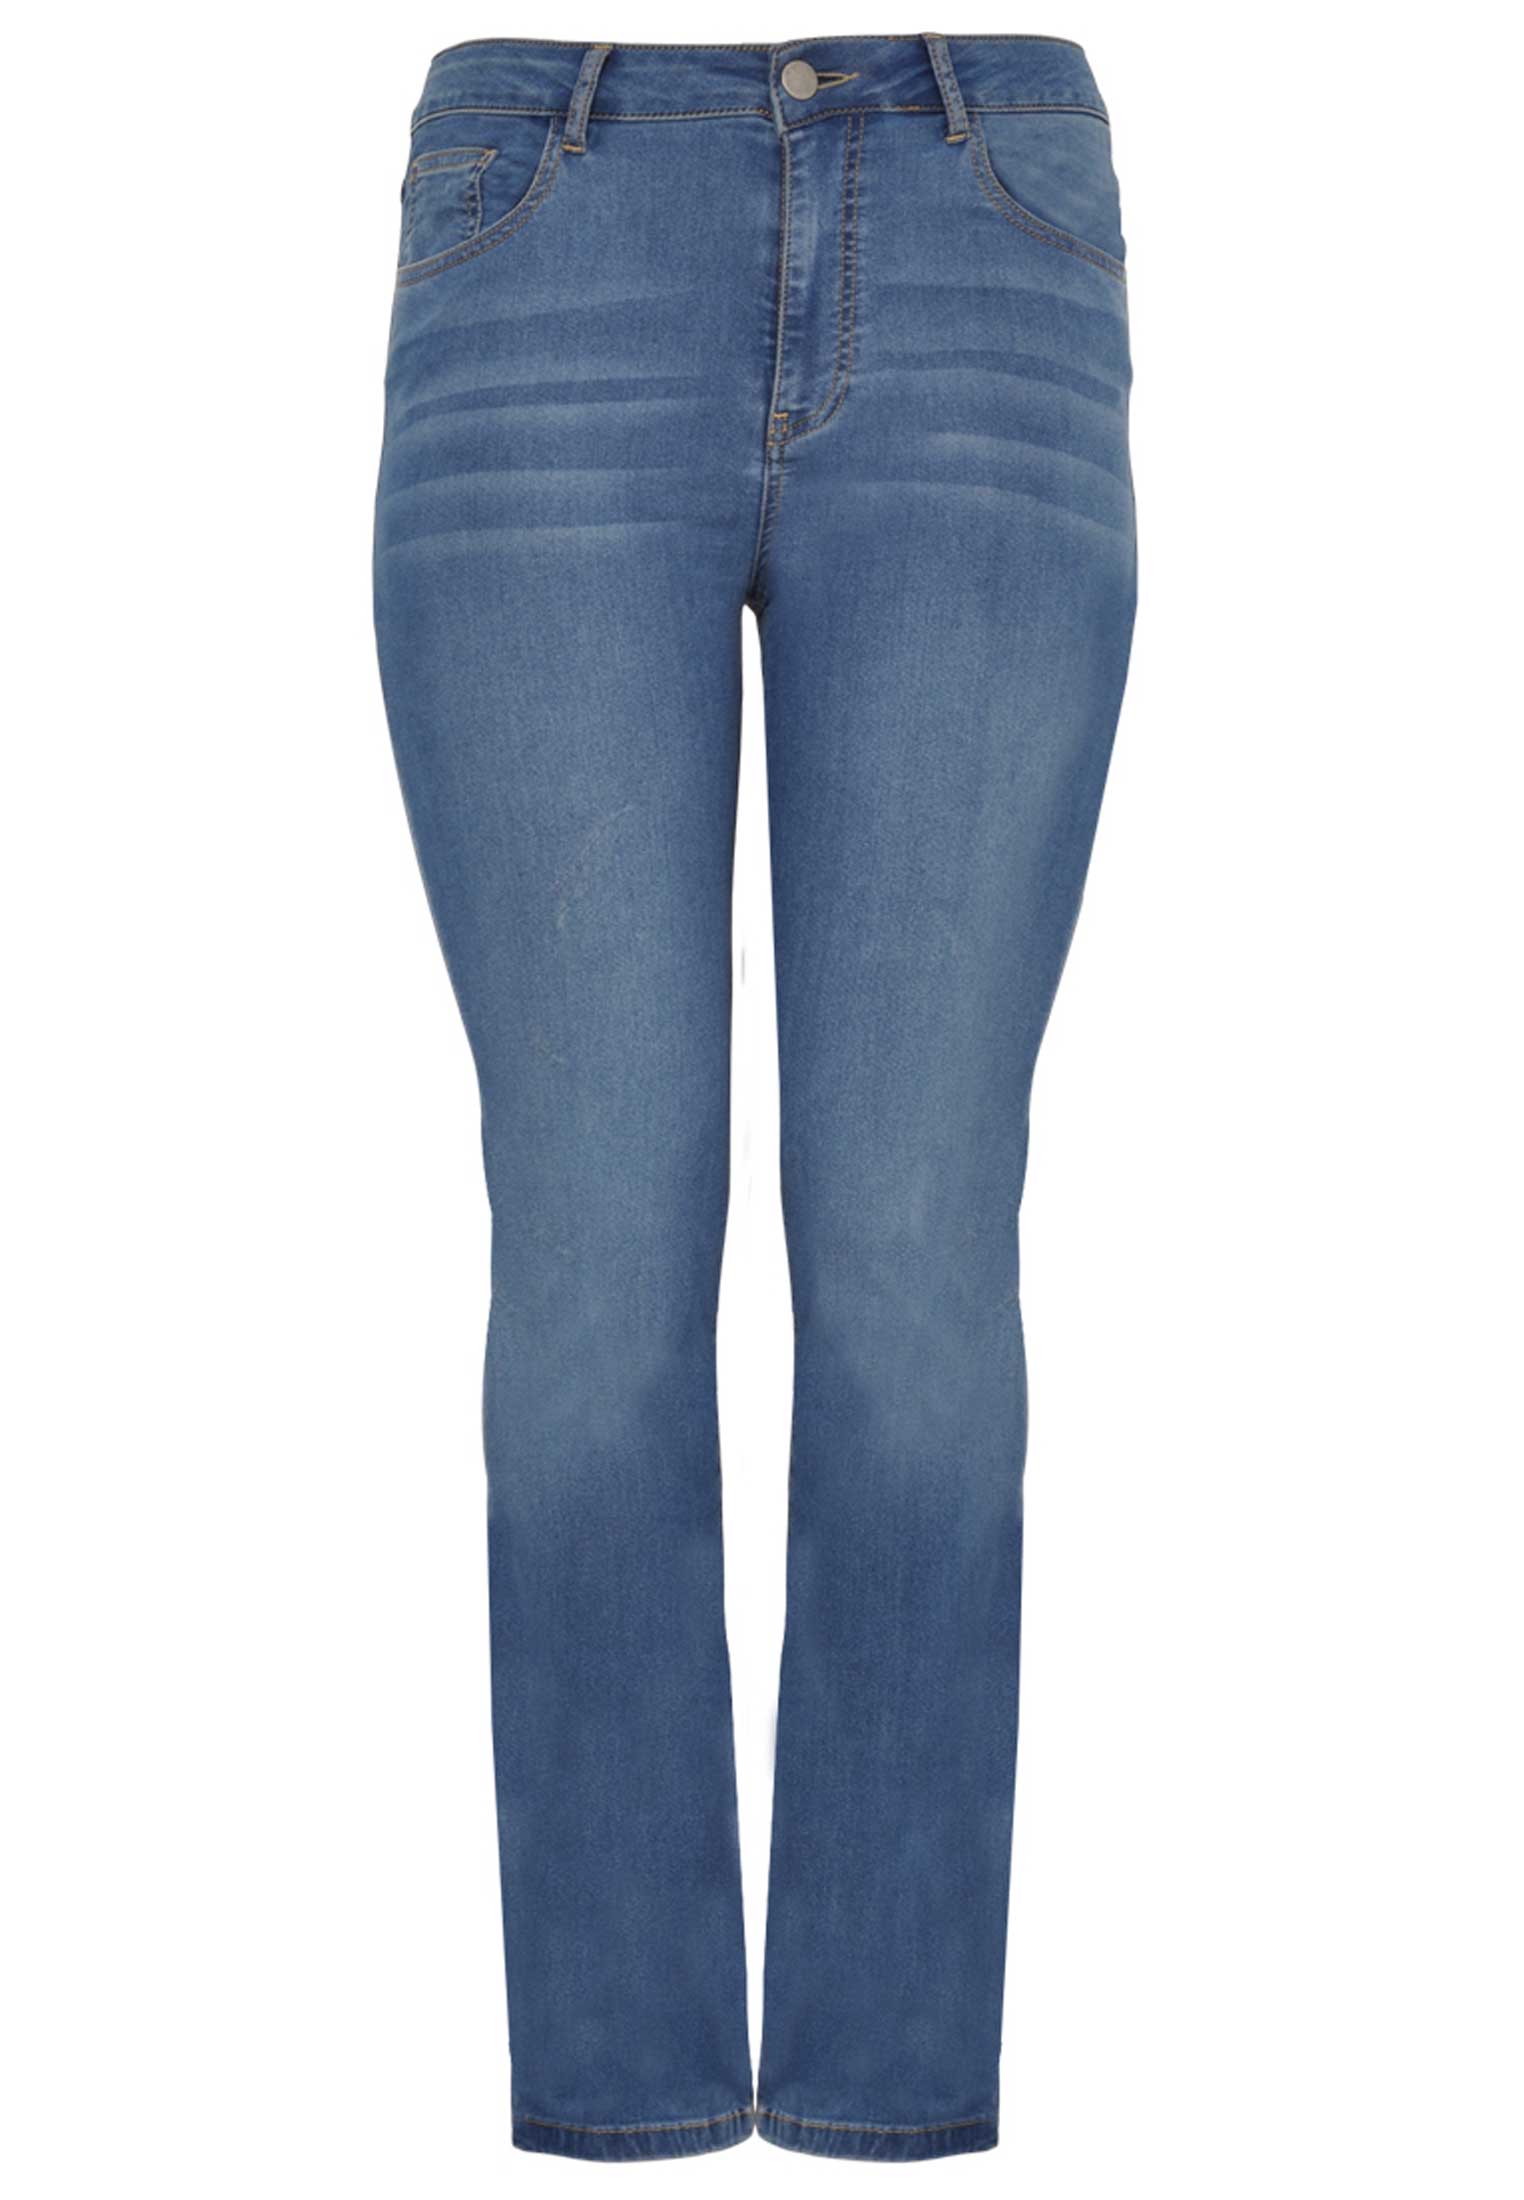 Jeans met rechte pijp 54 indigo